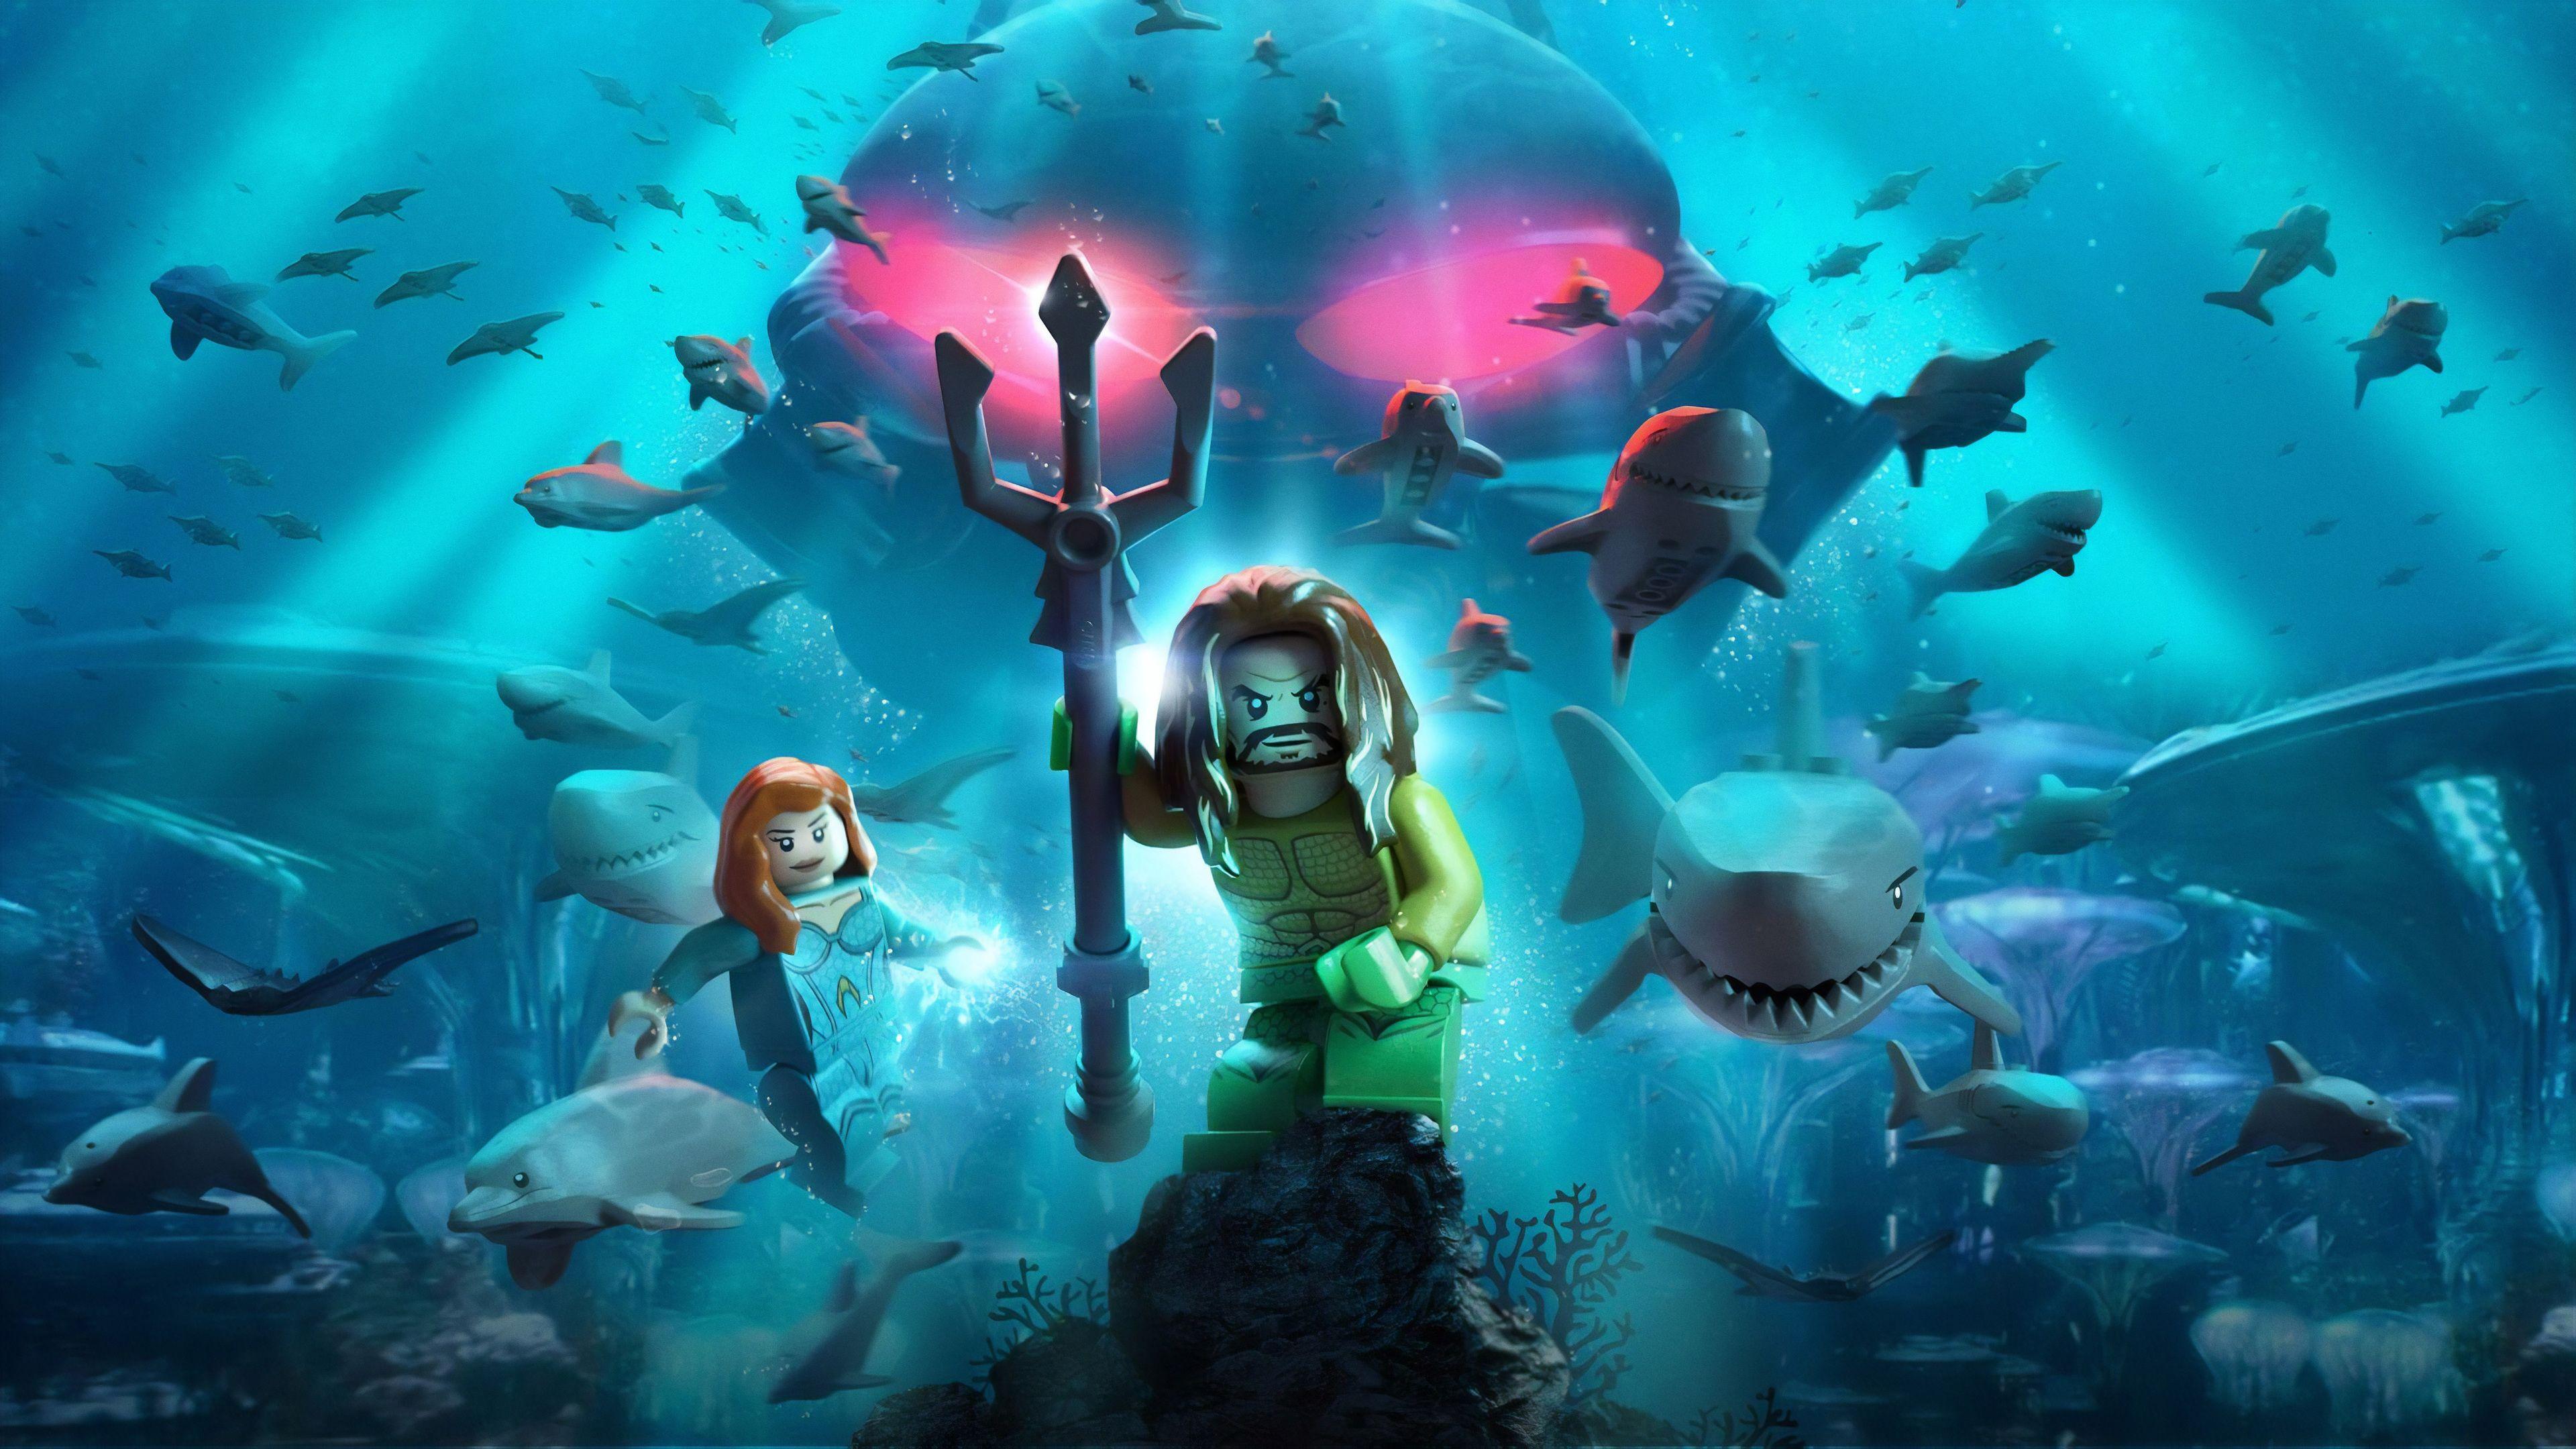 Wallpaper 4k Lego Aquaman Poster 4k 2018 Movies Wallpaper, 4k